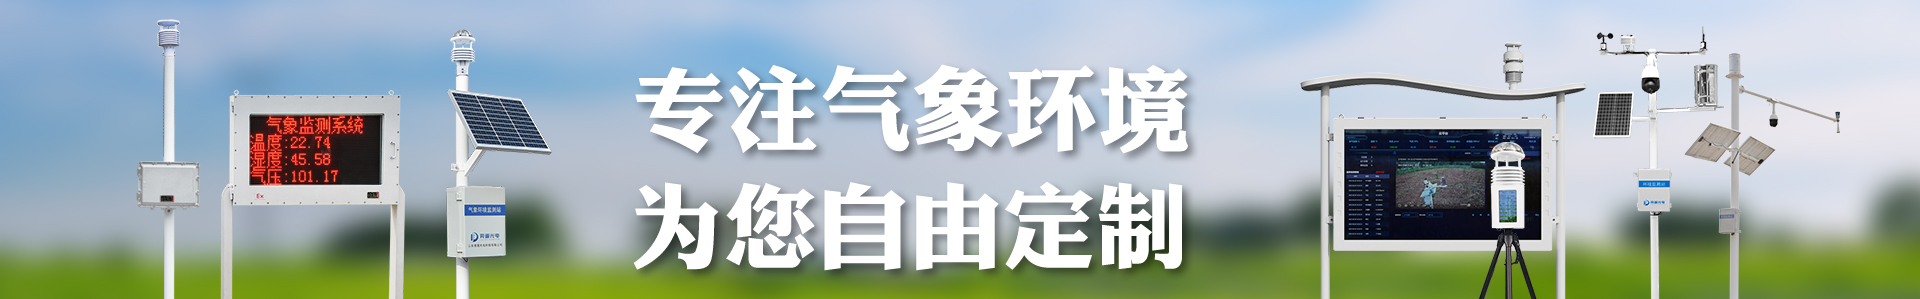 气象监测设备技术文章-自动气象站-小型气象站-防爆气象站-光伏气象站-开元旗牌·(中国)官方网站